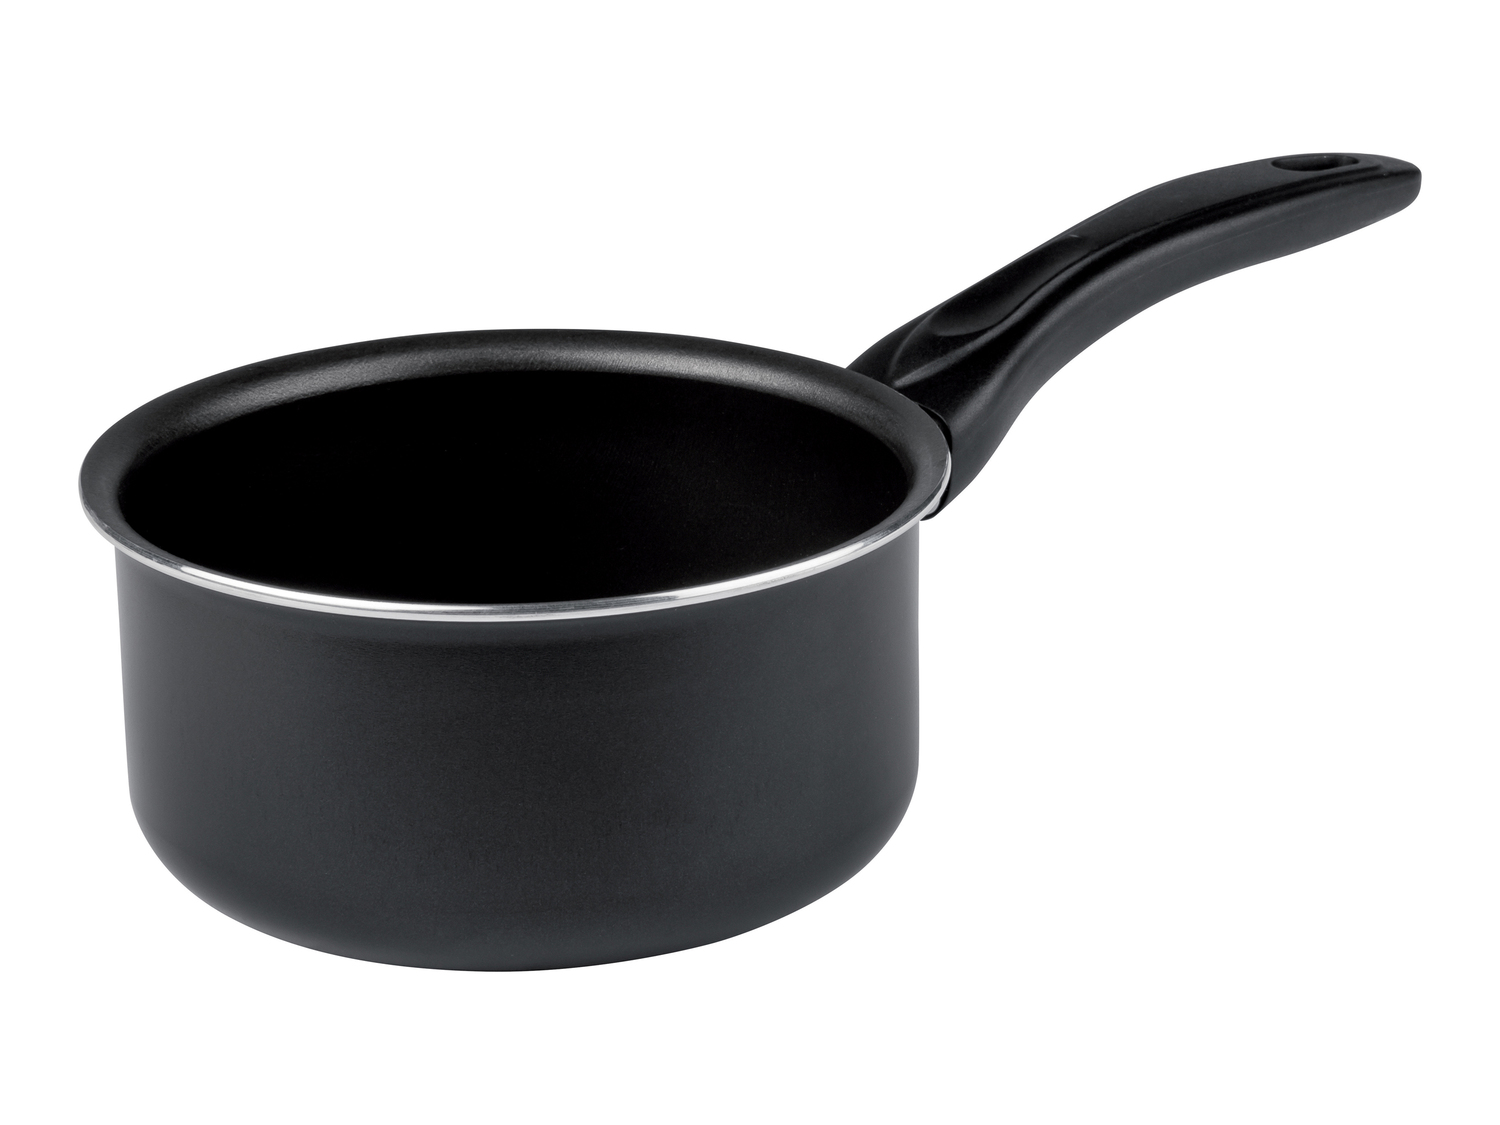 Padella, wok o casseruola Ernesto, prezzo 4.99 &#8364; 
- Padella: &Oslash;20 ...